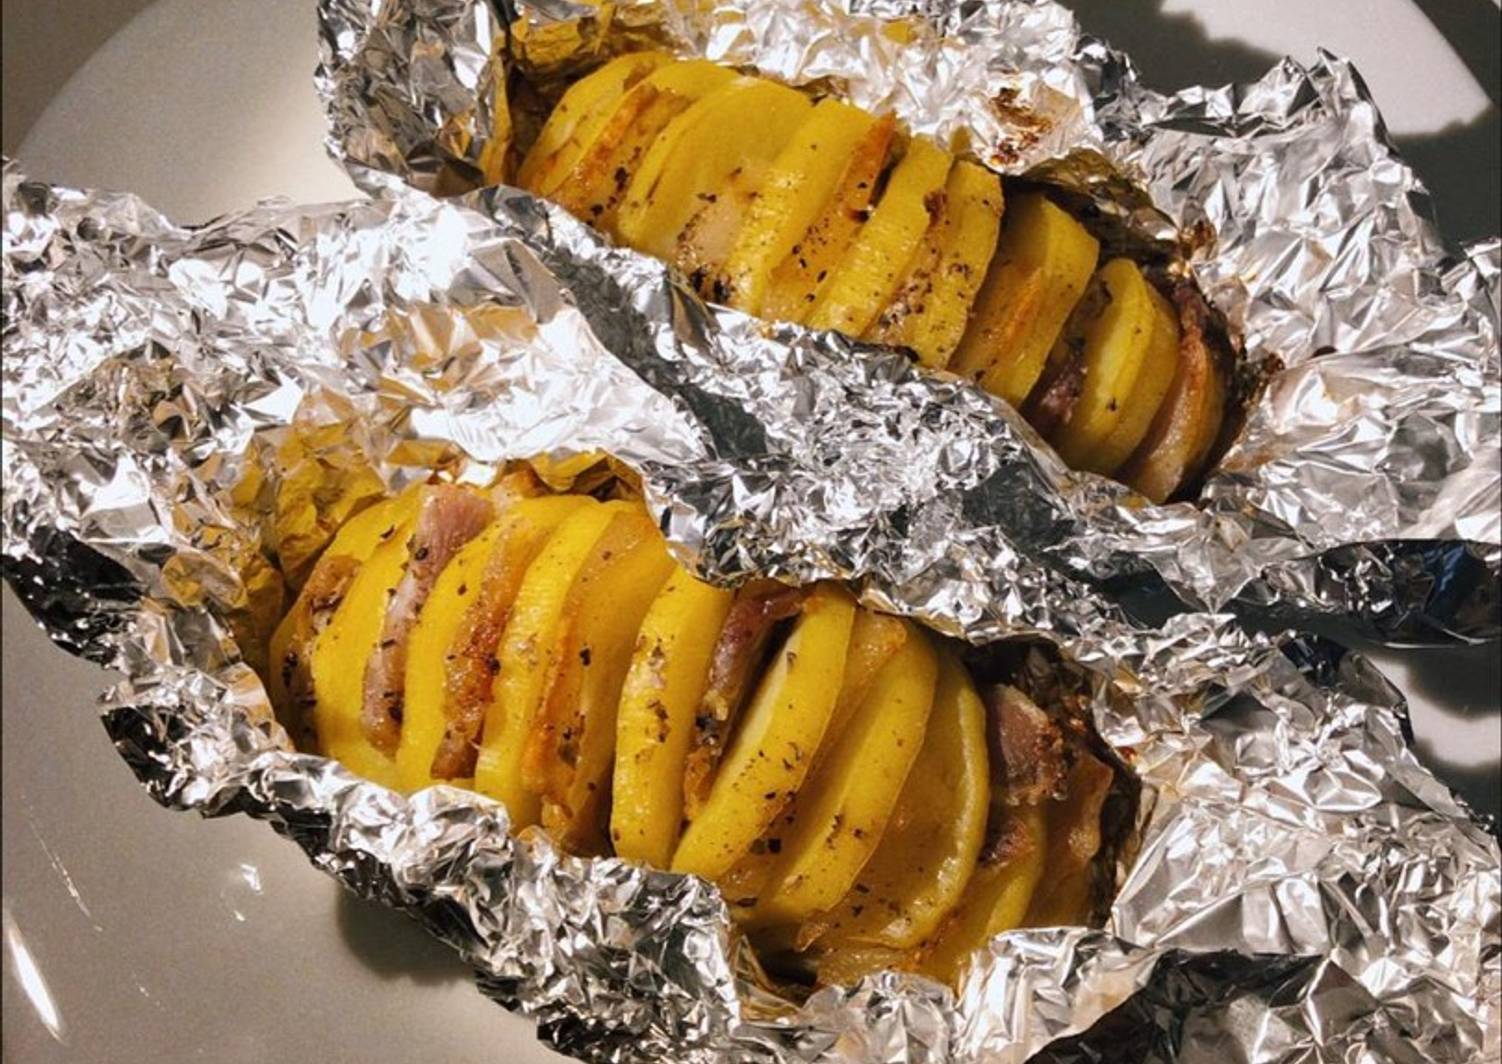 Картошка с салом в фольге в духовке рецепт с фото запеченная целиком